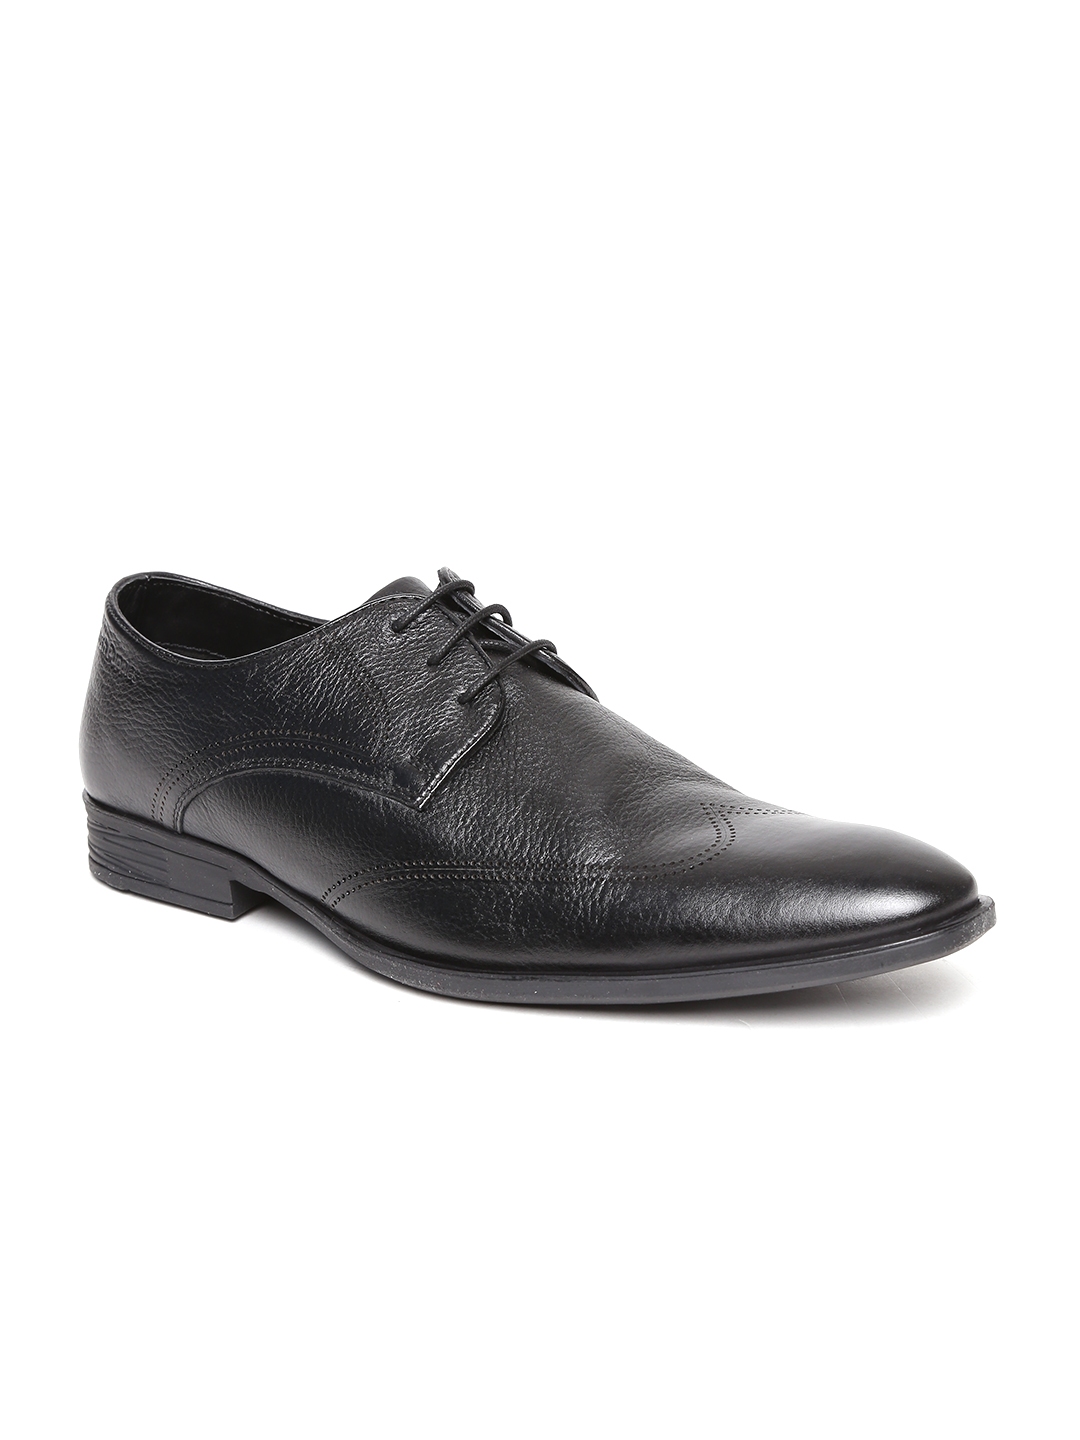 Buy Hush Puppies Men Black Leather Formal Derbys - Formal Shoes for Men ...